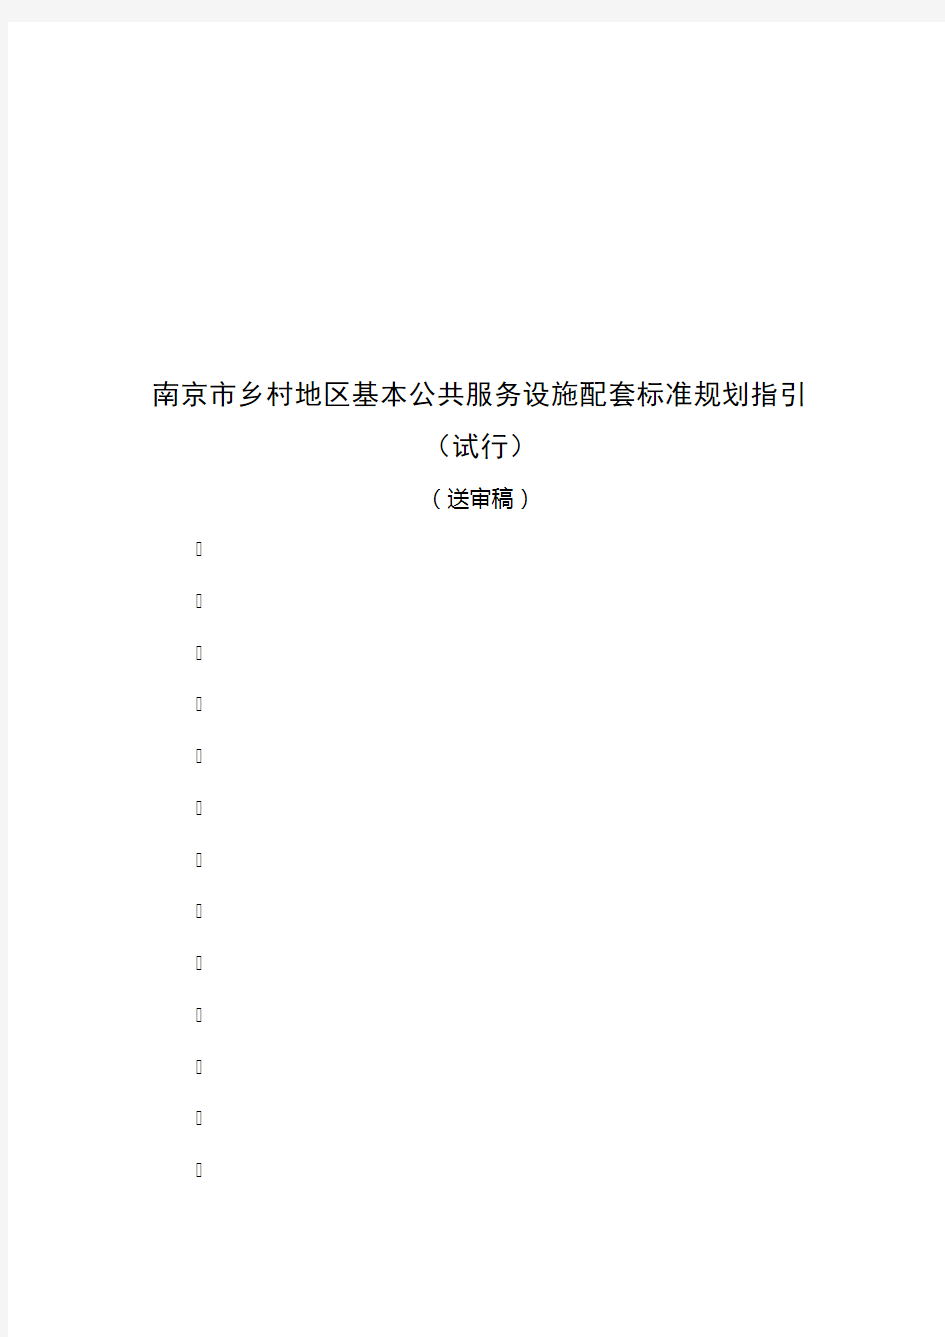 南京市乡村地区基本公共服务设施配套标准规划指引2.12